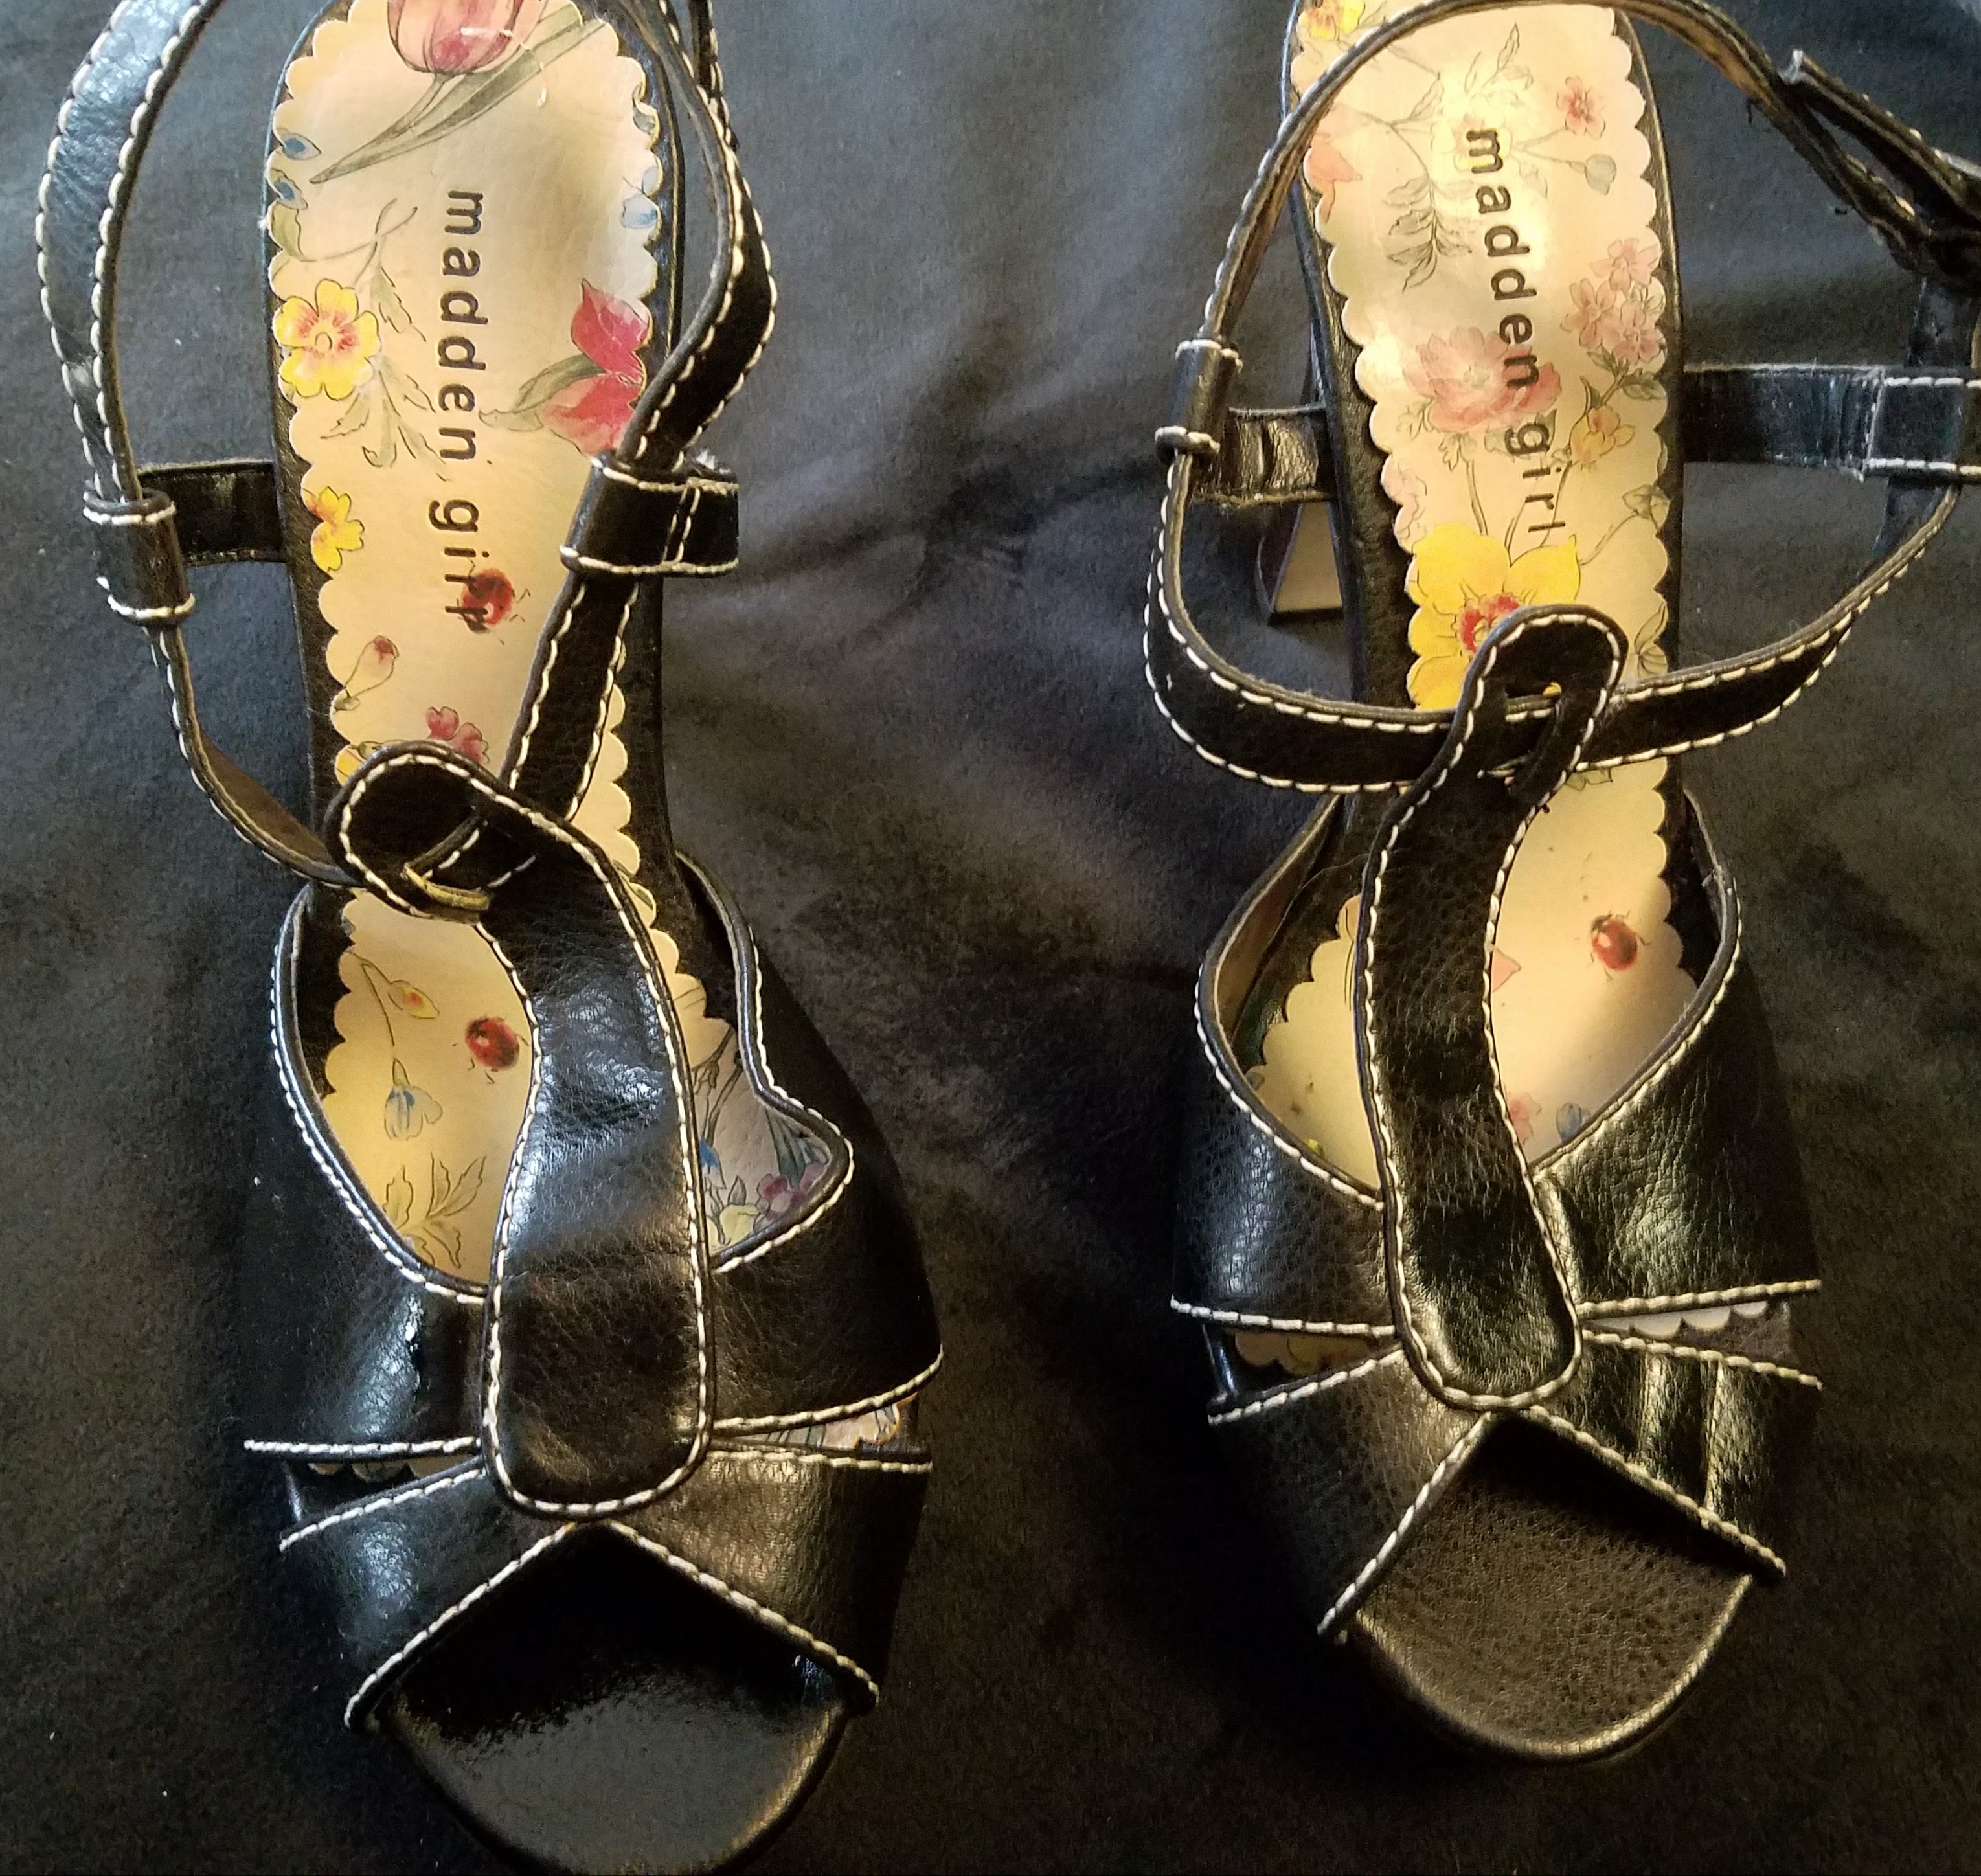 Vintage Madden Steve Madden Shoe size 9.5 US – Aunt Gladys' Attic